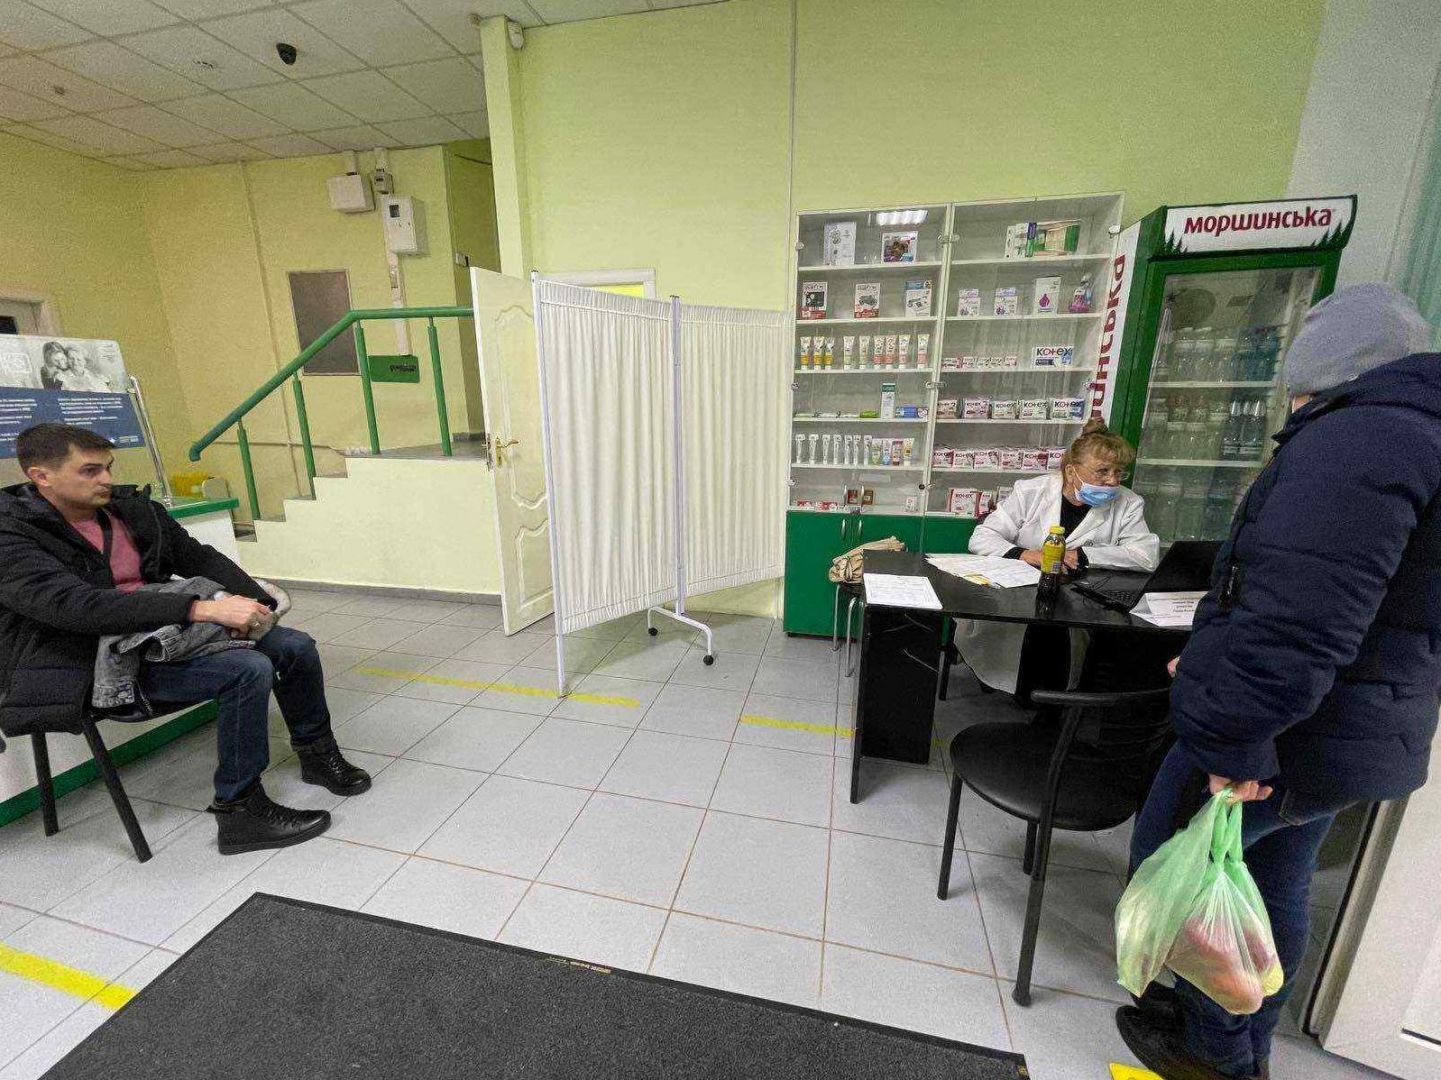 Статья В Одессе открылся новый пункт вакцинации — в аптеке в центре города Утренний город. Одесса